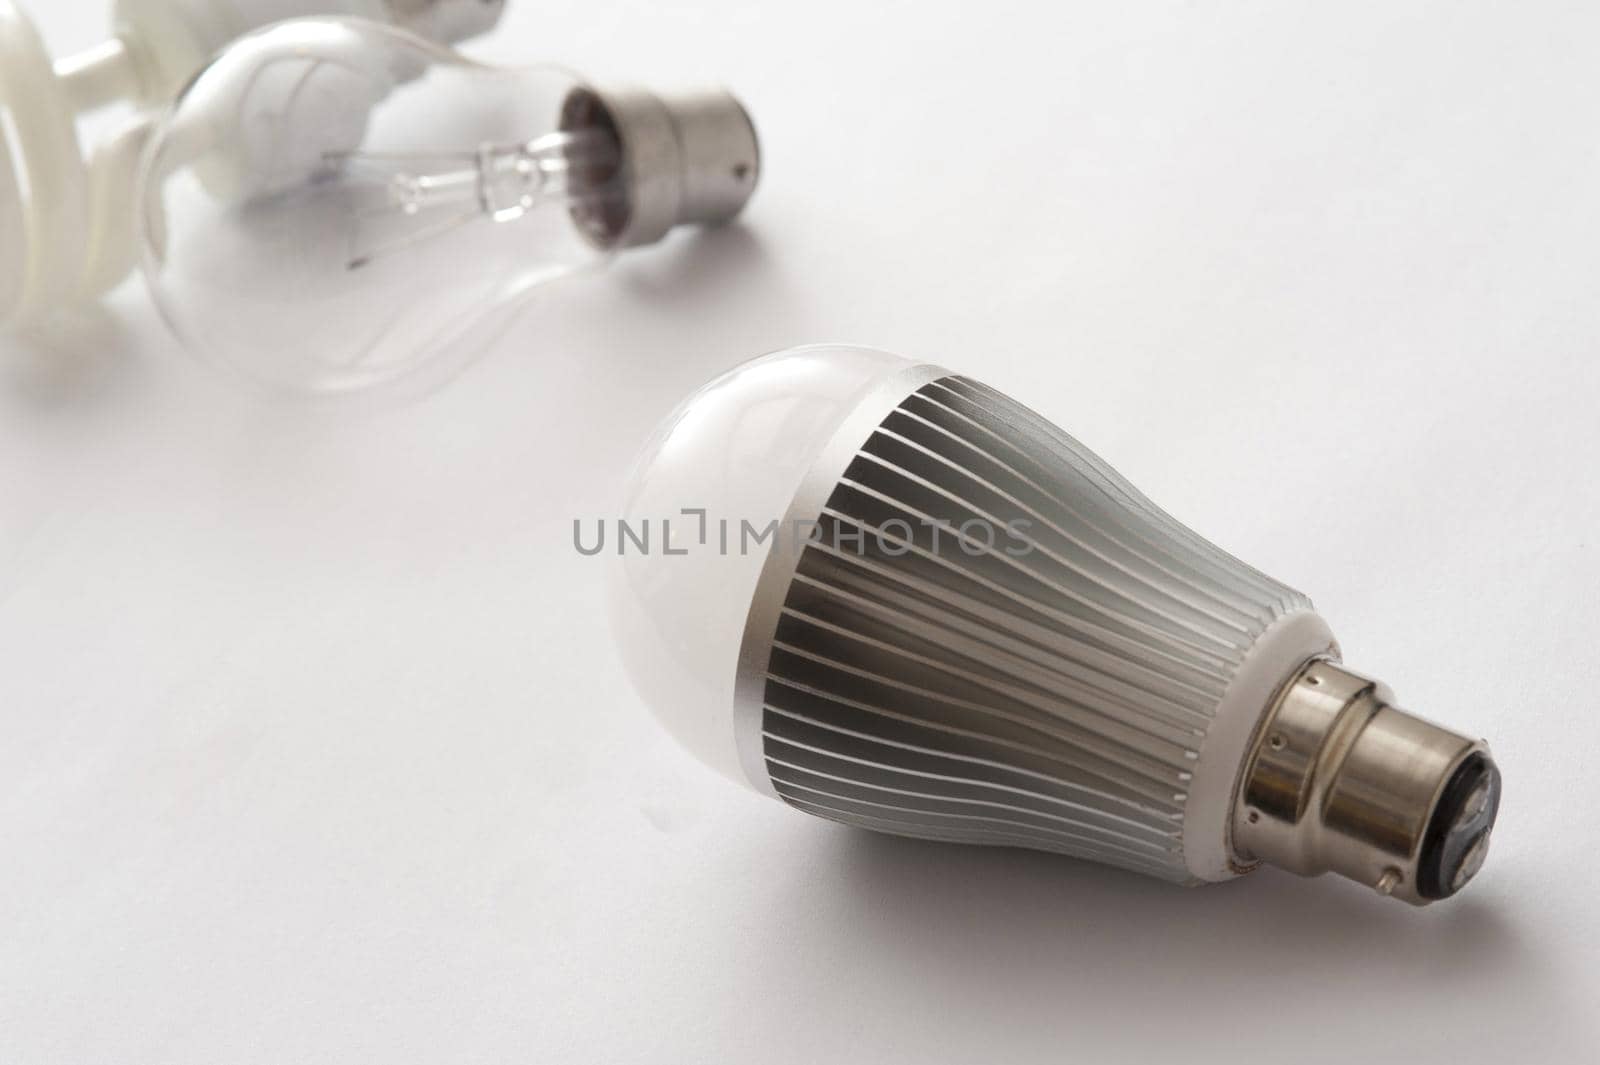 LED lightbulb by sanisra